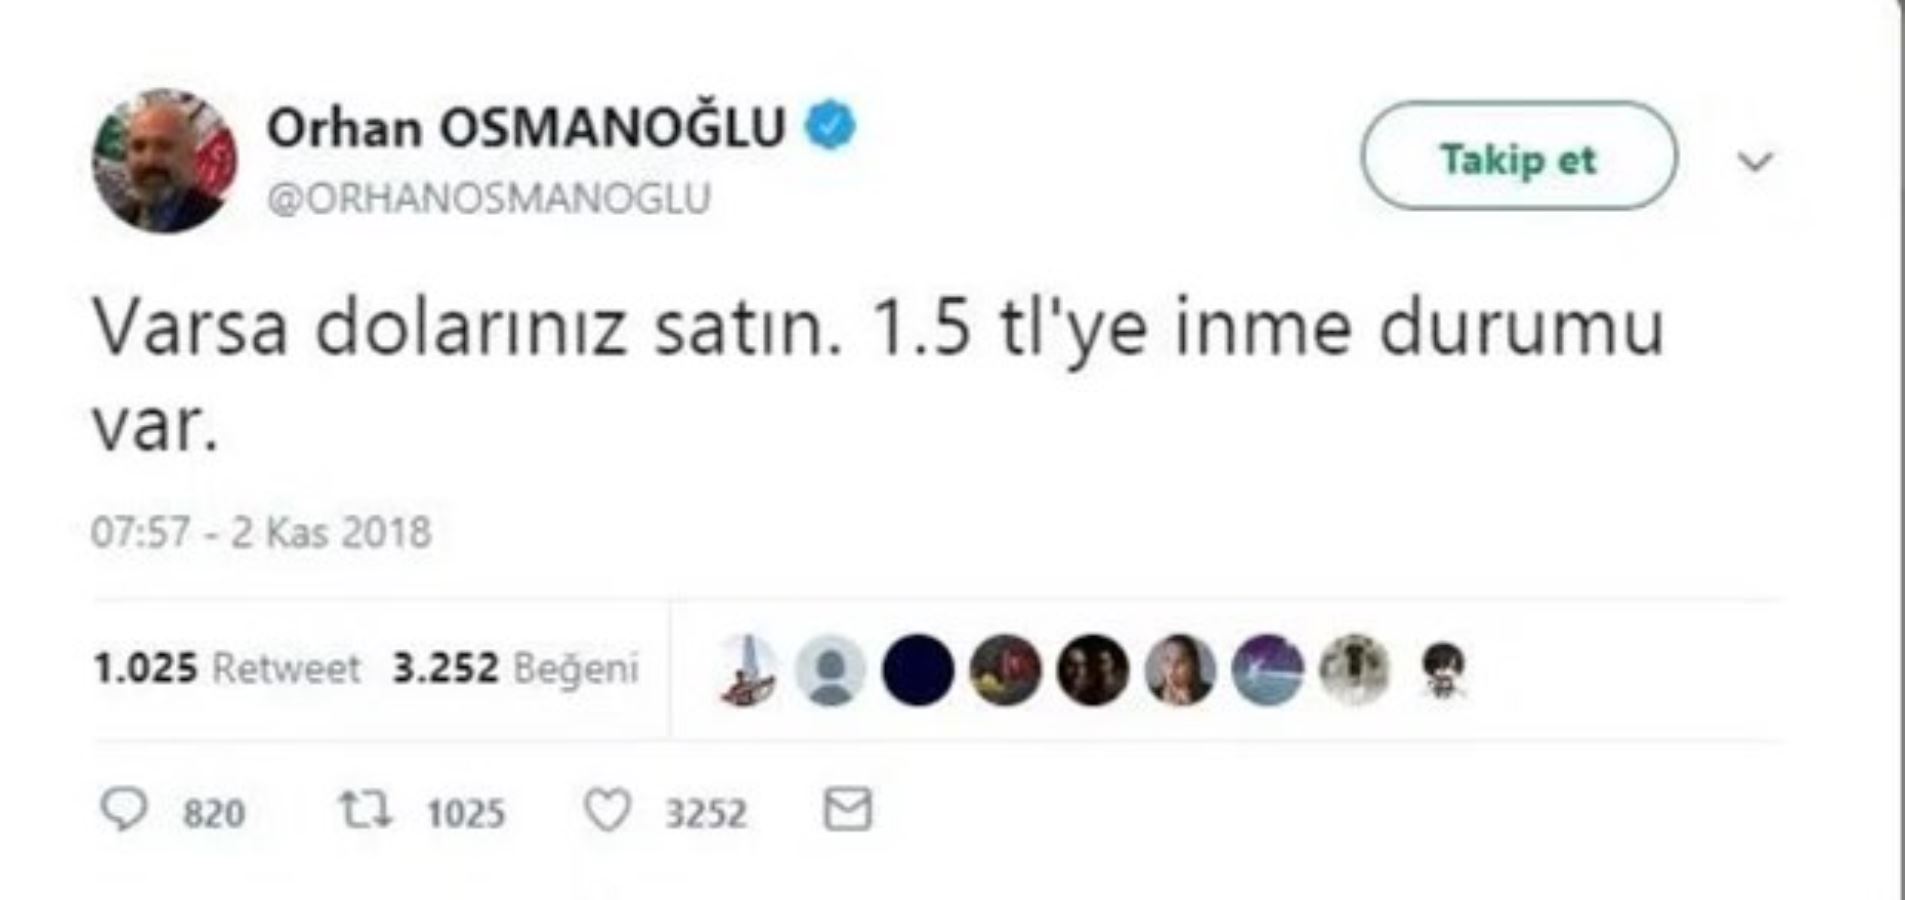 Ünlü dolar tweetini silen Orhan Osmanoğlu'ndan açıklama: Heklendim